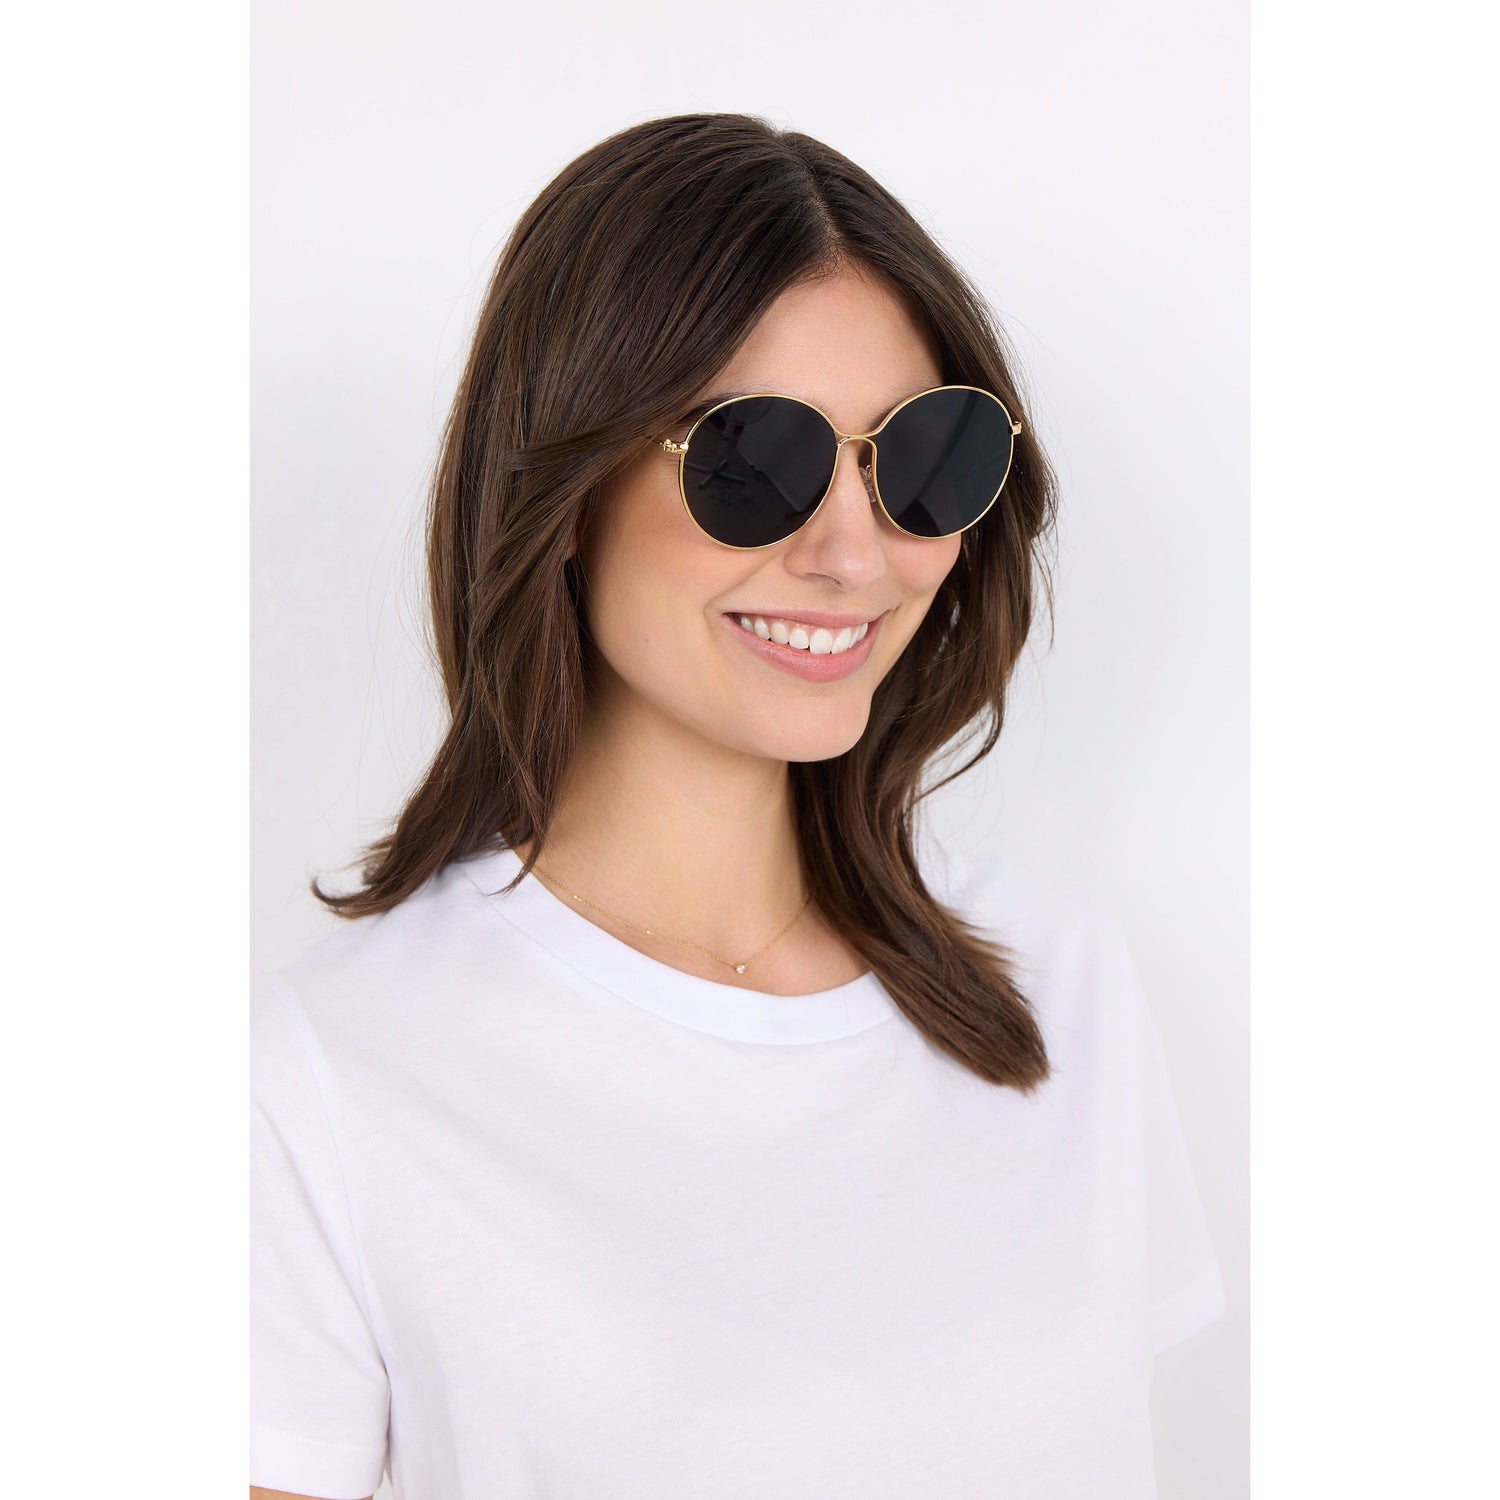 Laureen 1 Sunglasses